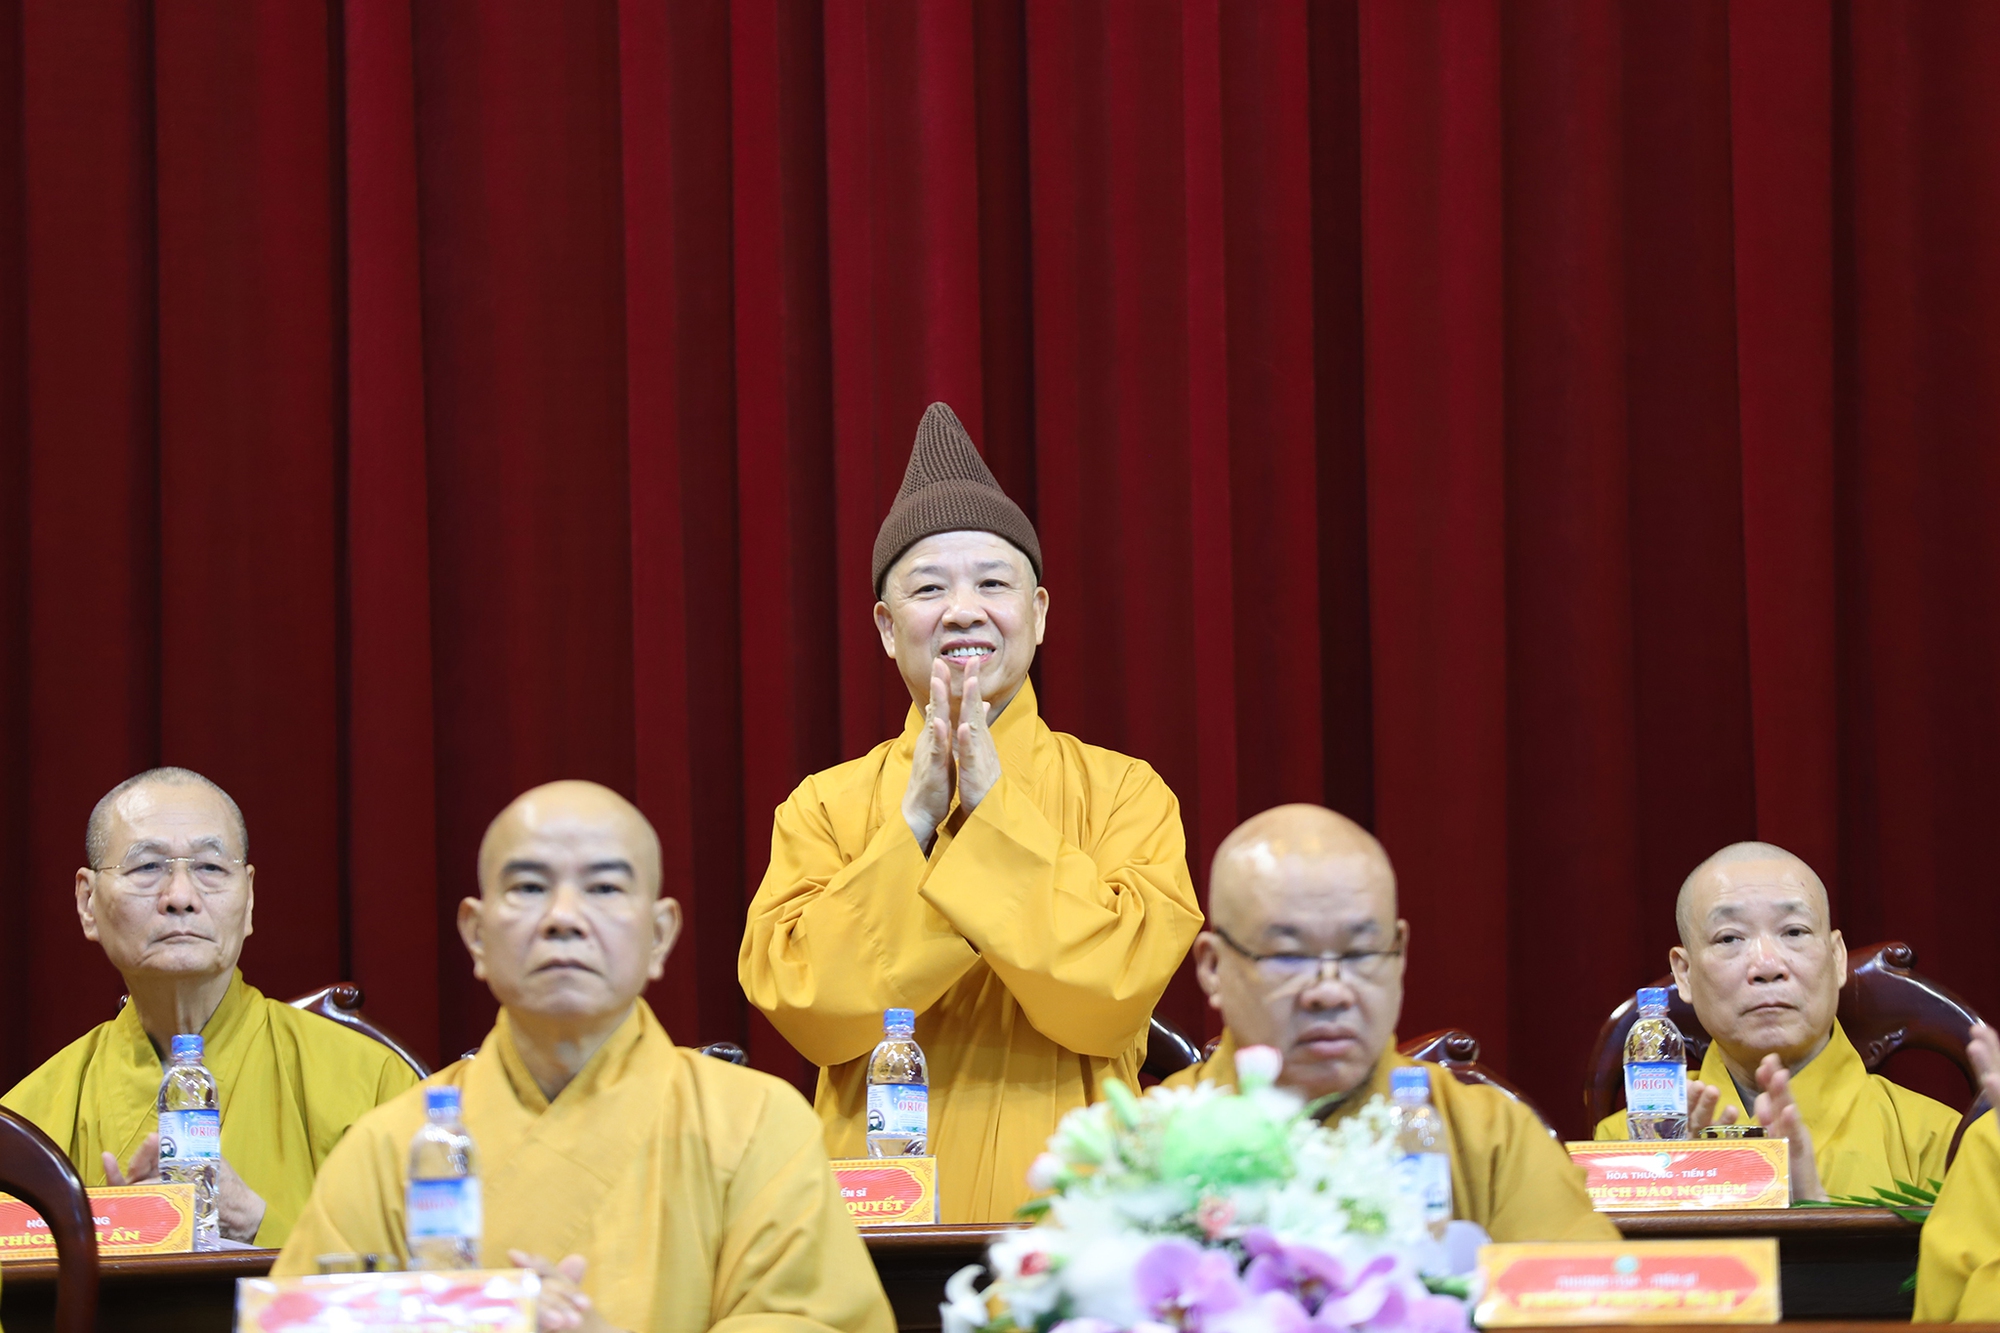 Lễ khai giảng đặc biệt tại ngôi trường có nhiều nhà sư theo học nhất Việt Nam - Ảnh 6.